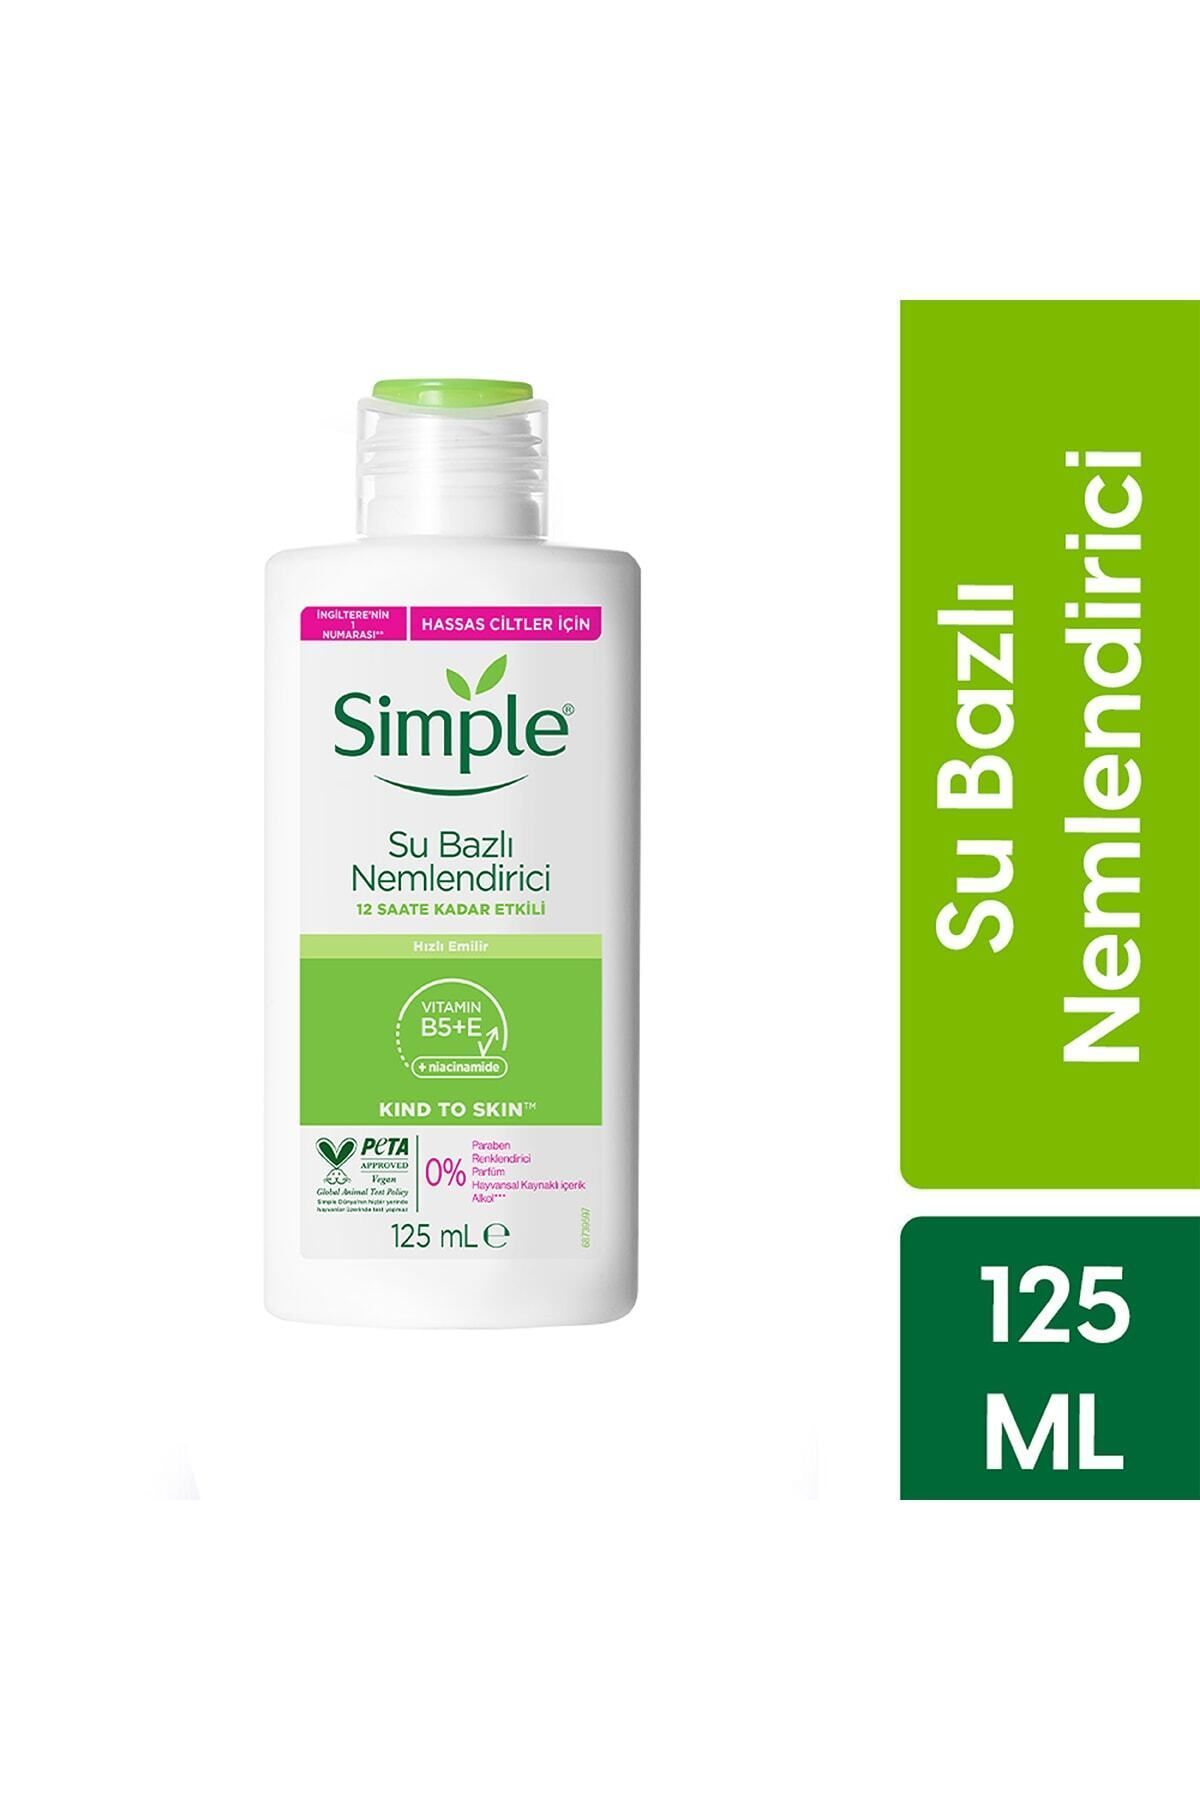 Simple Kind To Skin Su Bazlı Nemlendirici Hassas Ciltler İçin 12 Saate Kadar Etkili 125 ml